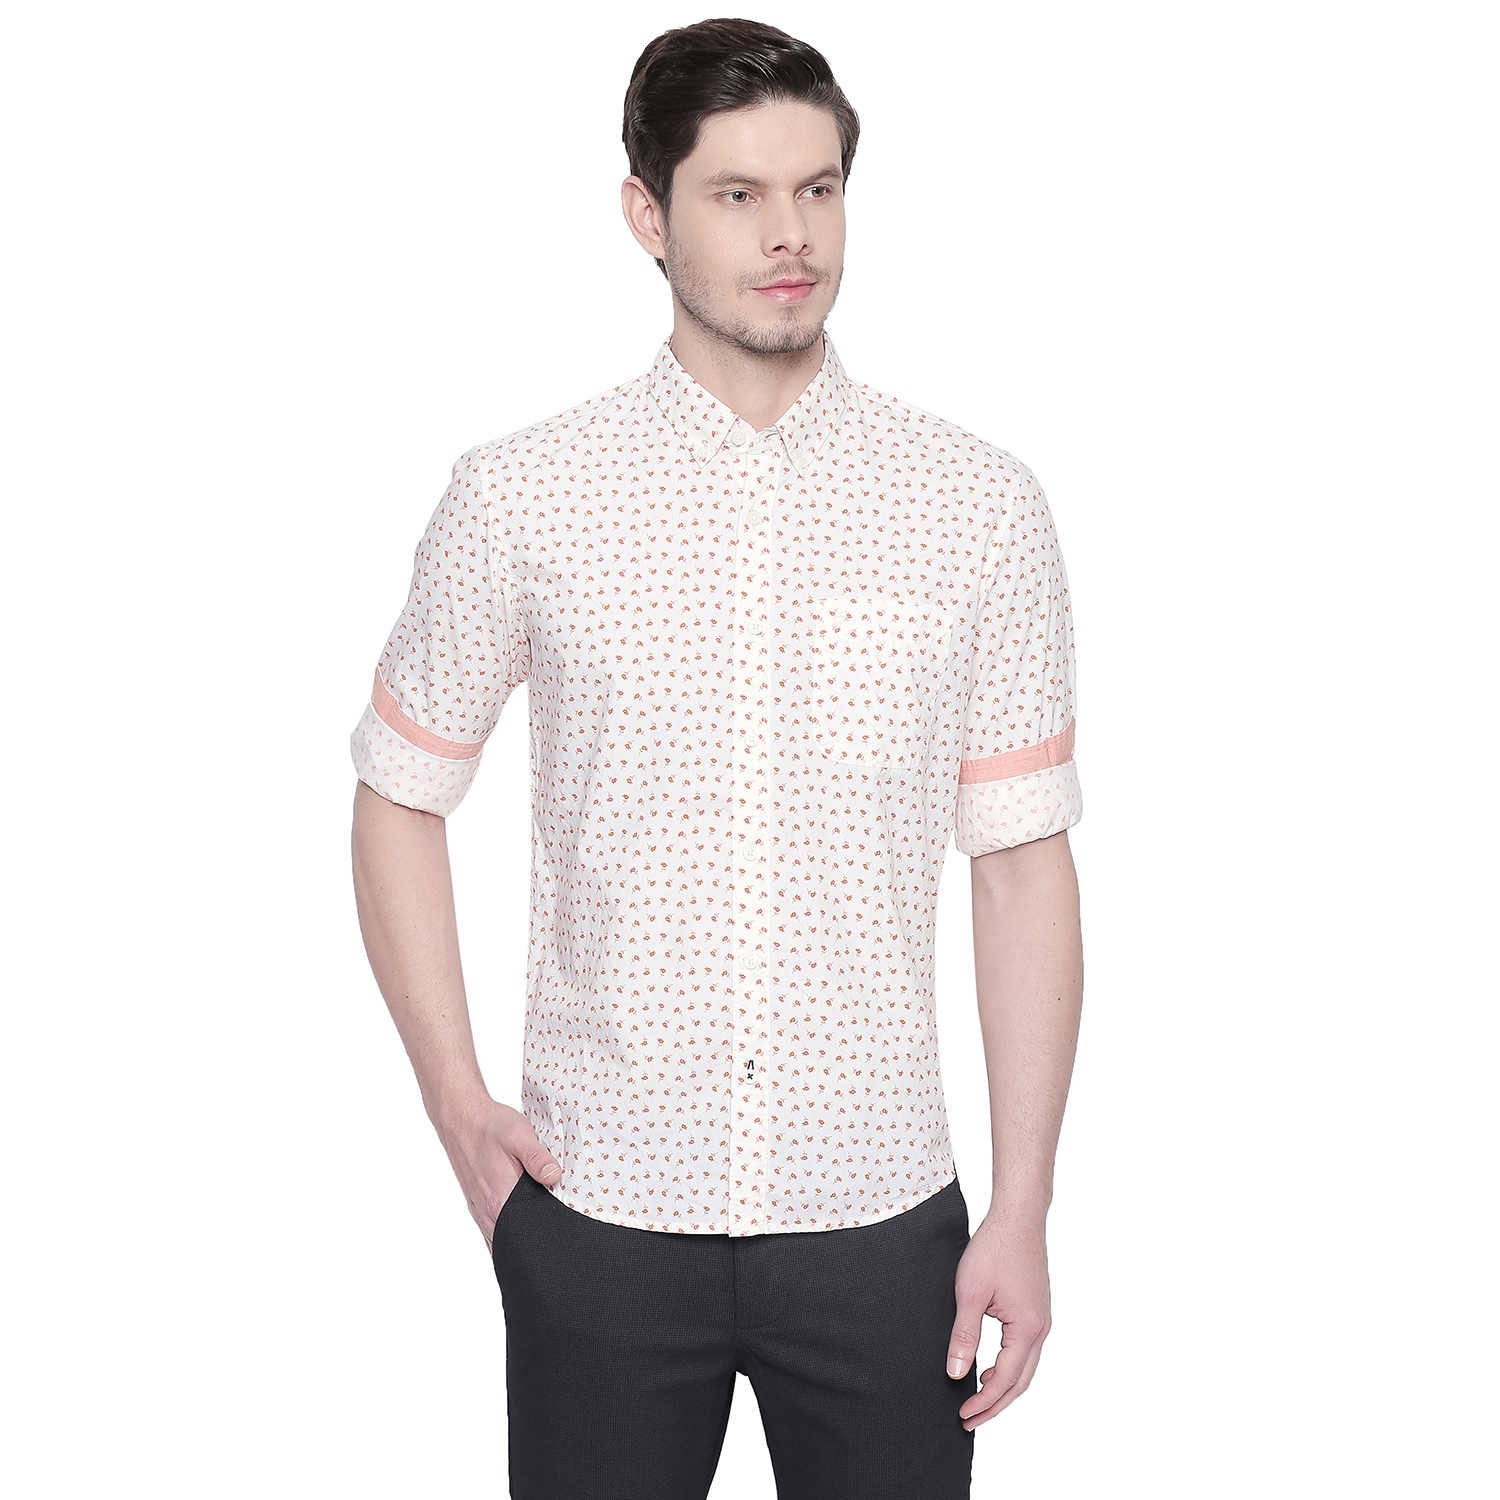 BASICS | Basics Slim Fit Coral Orange Printed Shirt-21BSH47860